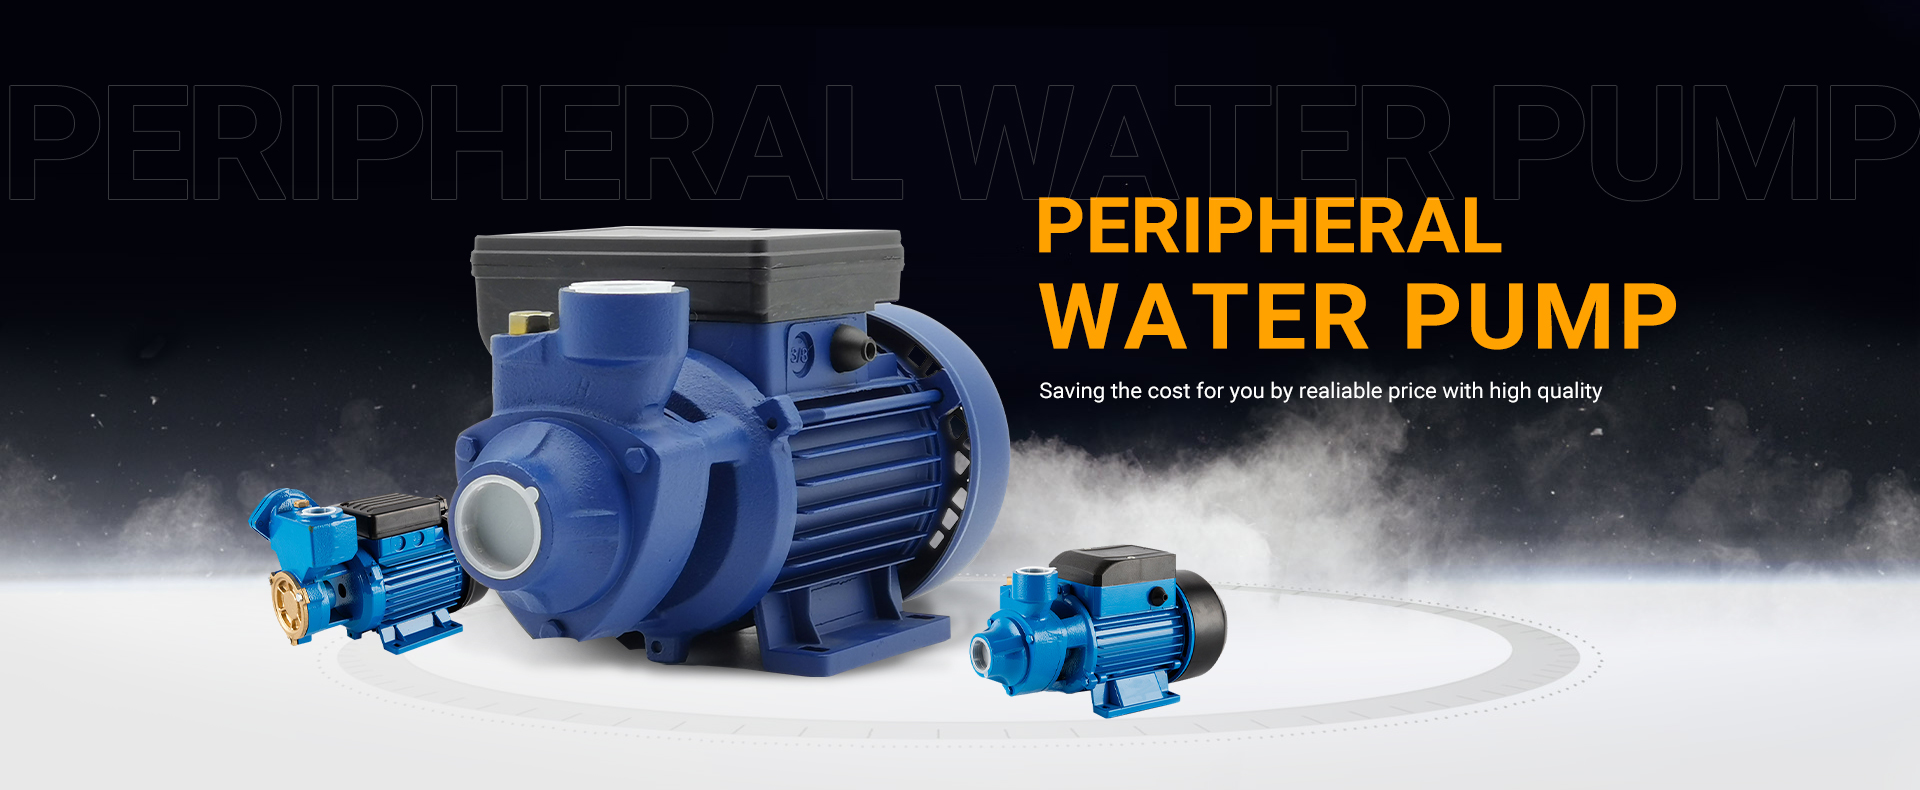 Water Pump, Self-Priming Pump, Diesel Engine - Rich